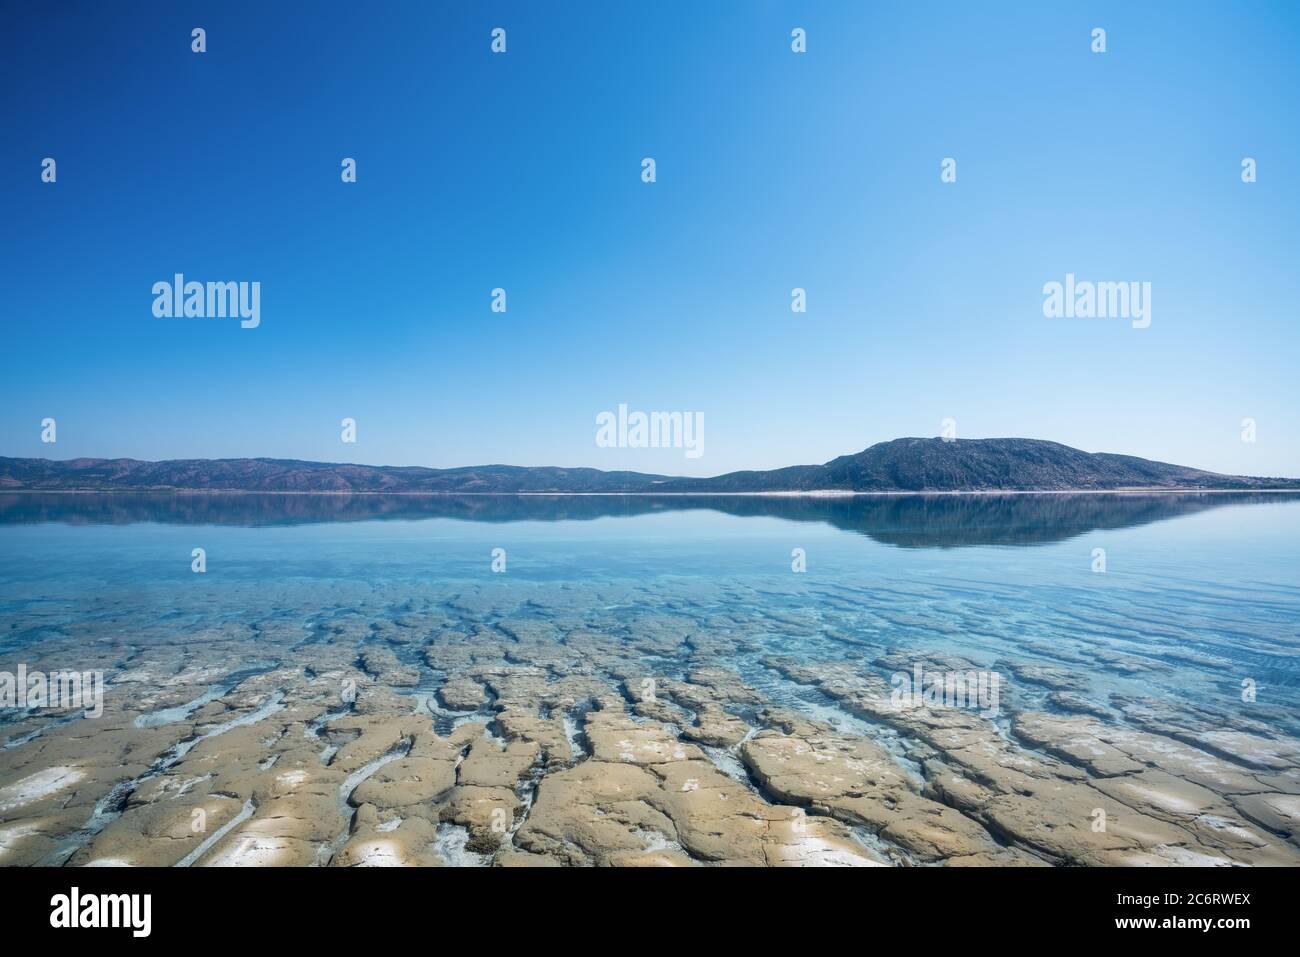 Le fond et la surface avec de l'eau propre en cristal du lac Salda en Turquie. Concept de tourisme de voyage. Photo de haute qualité Banque D'Images